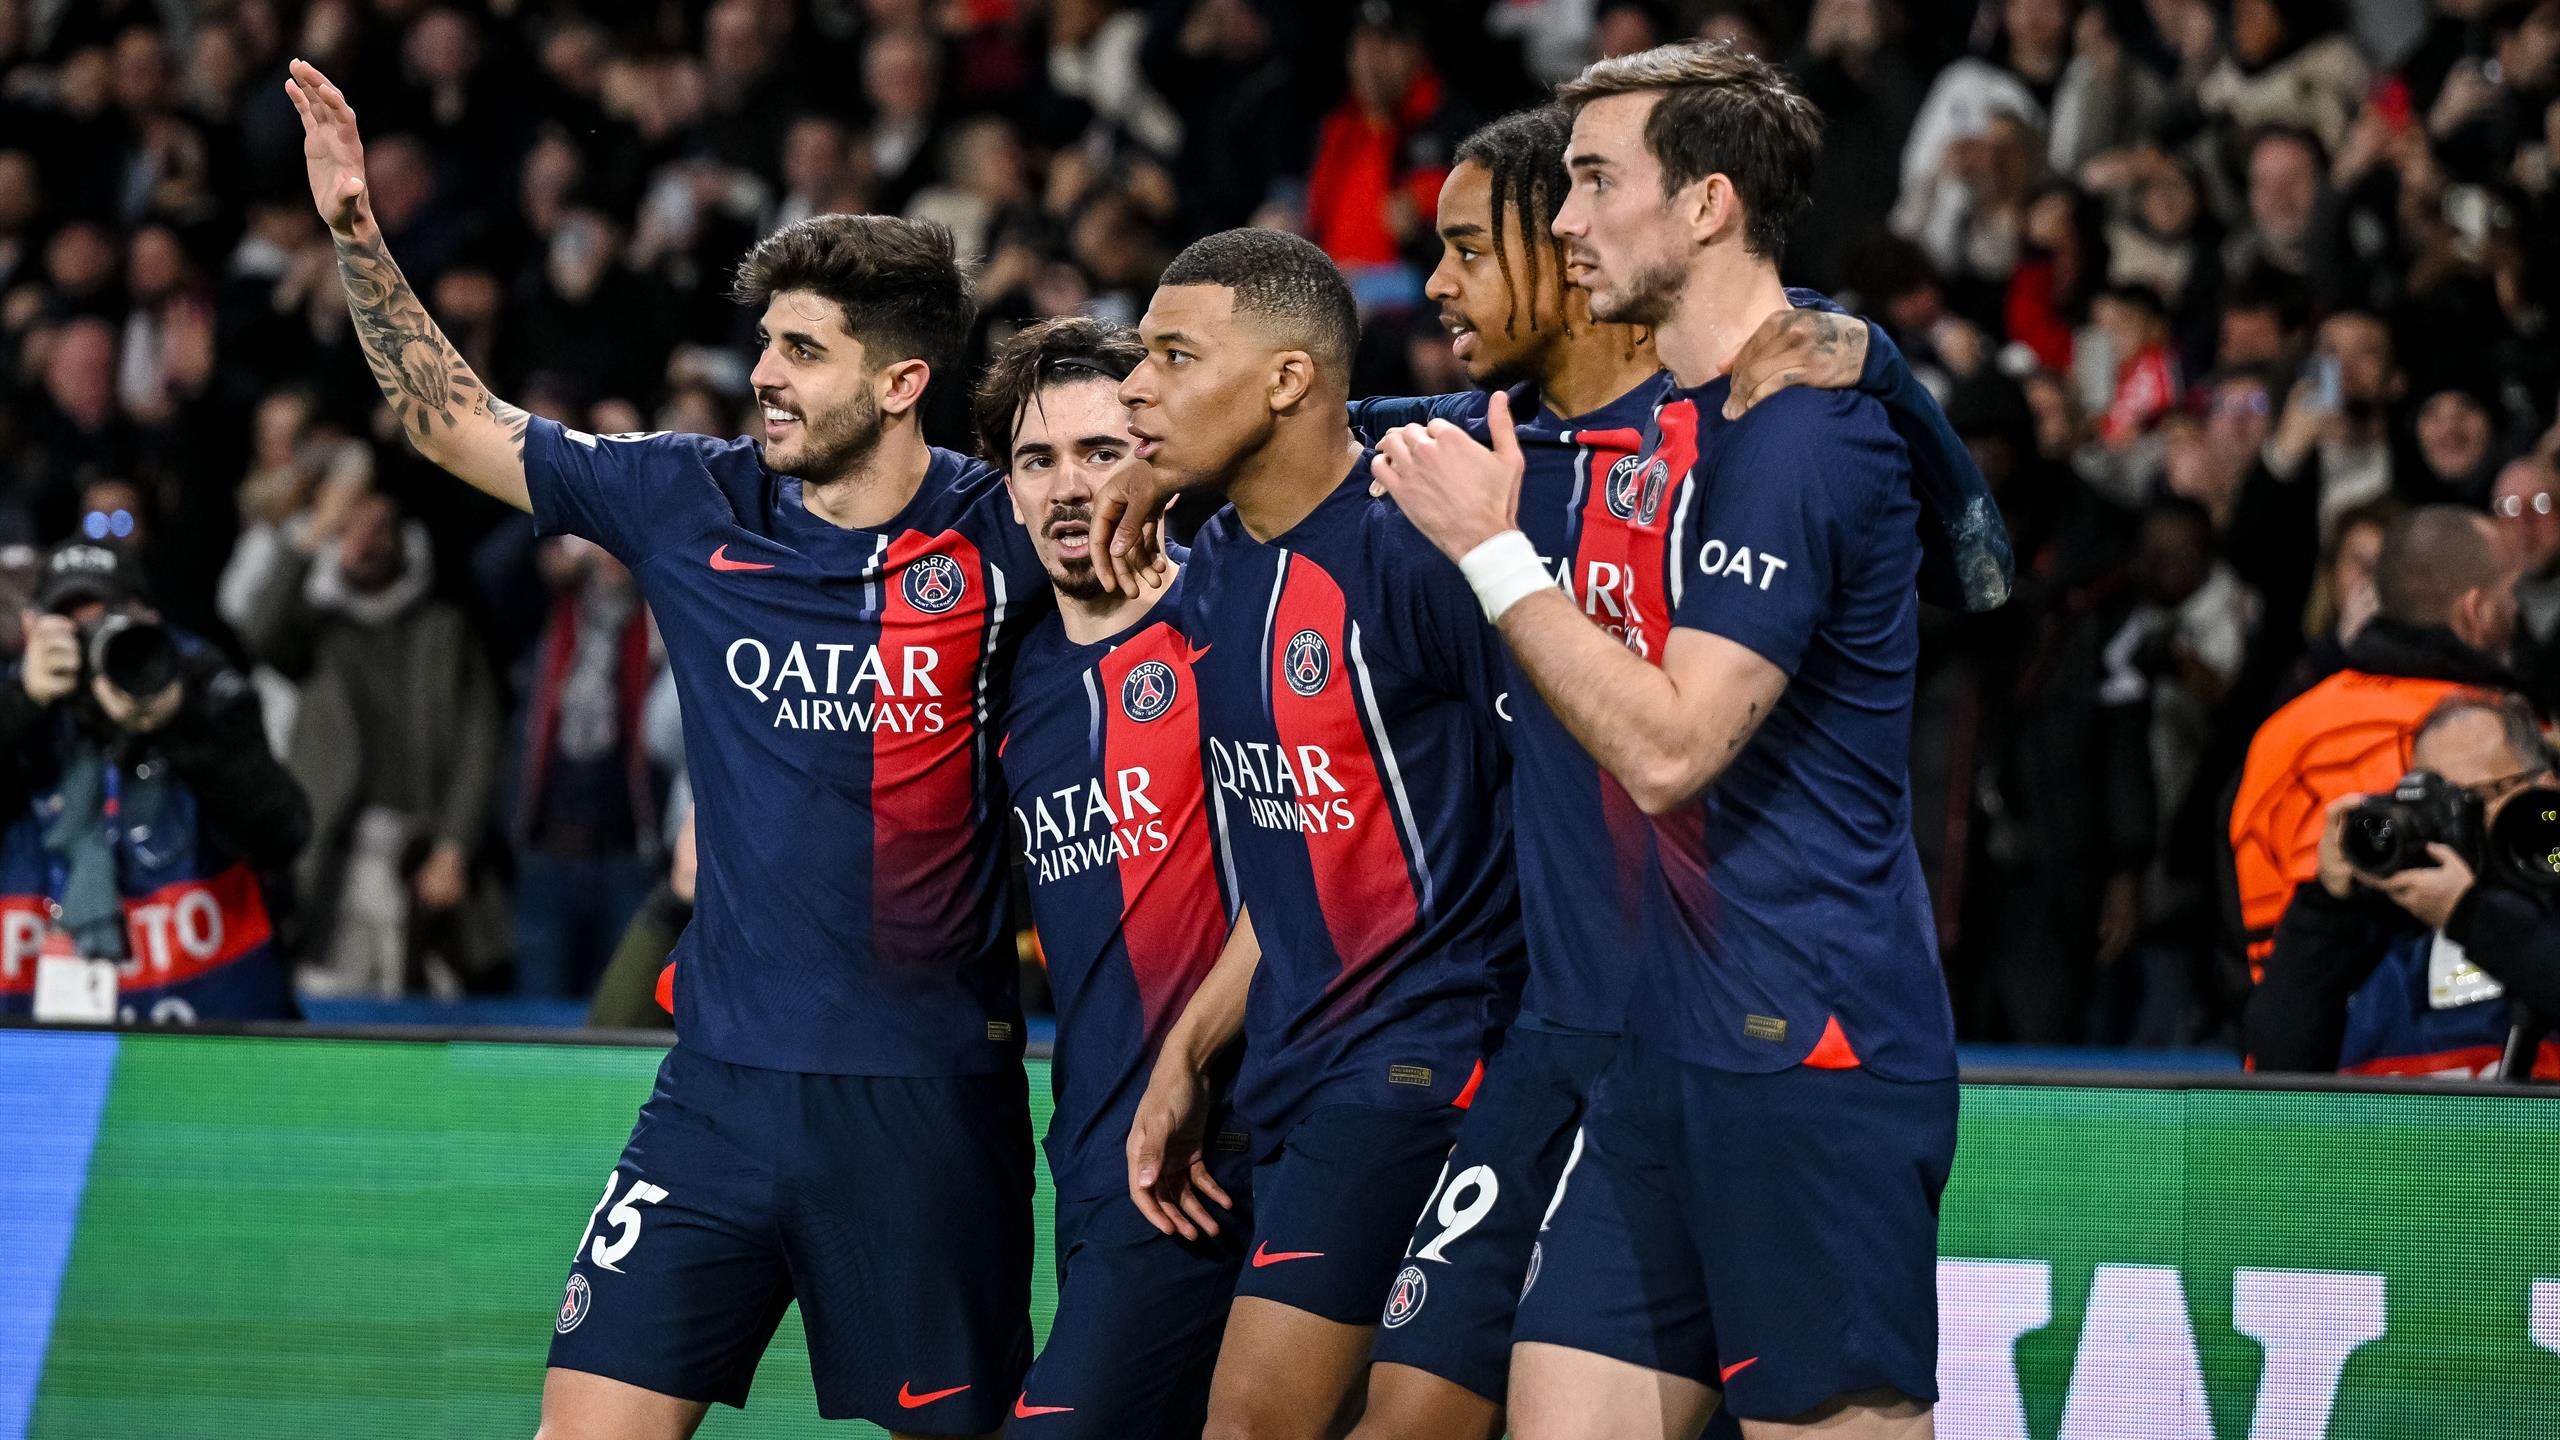 Mecze przełożone i zmieniony harmonogram: obecność Paris Saint-Germain w półfinale Ligi Mistrzów może wstrząsnąć ligą francuską